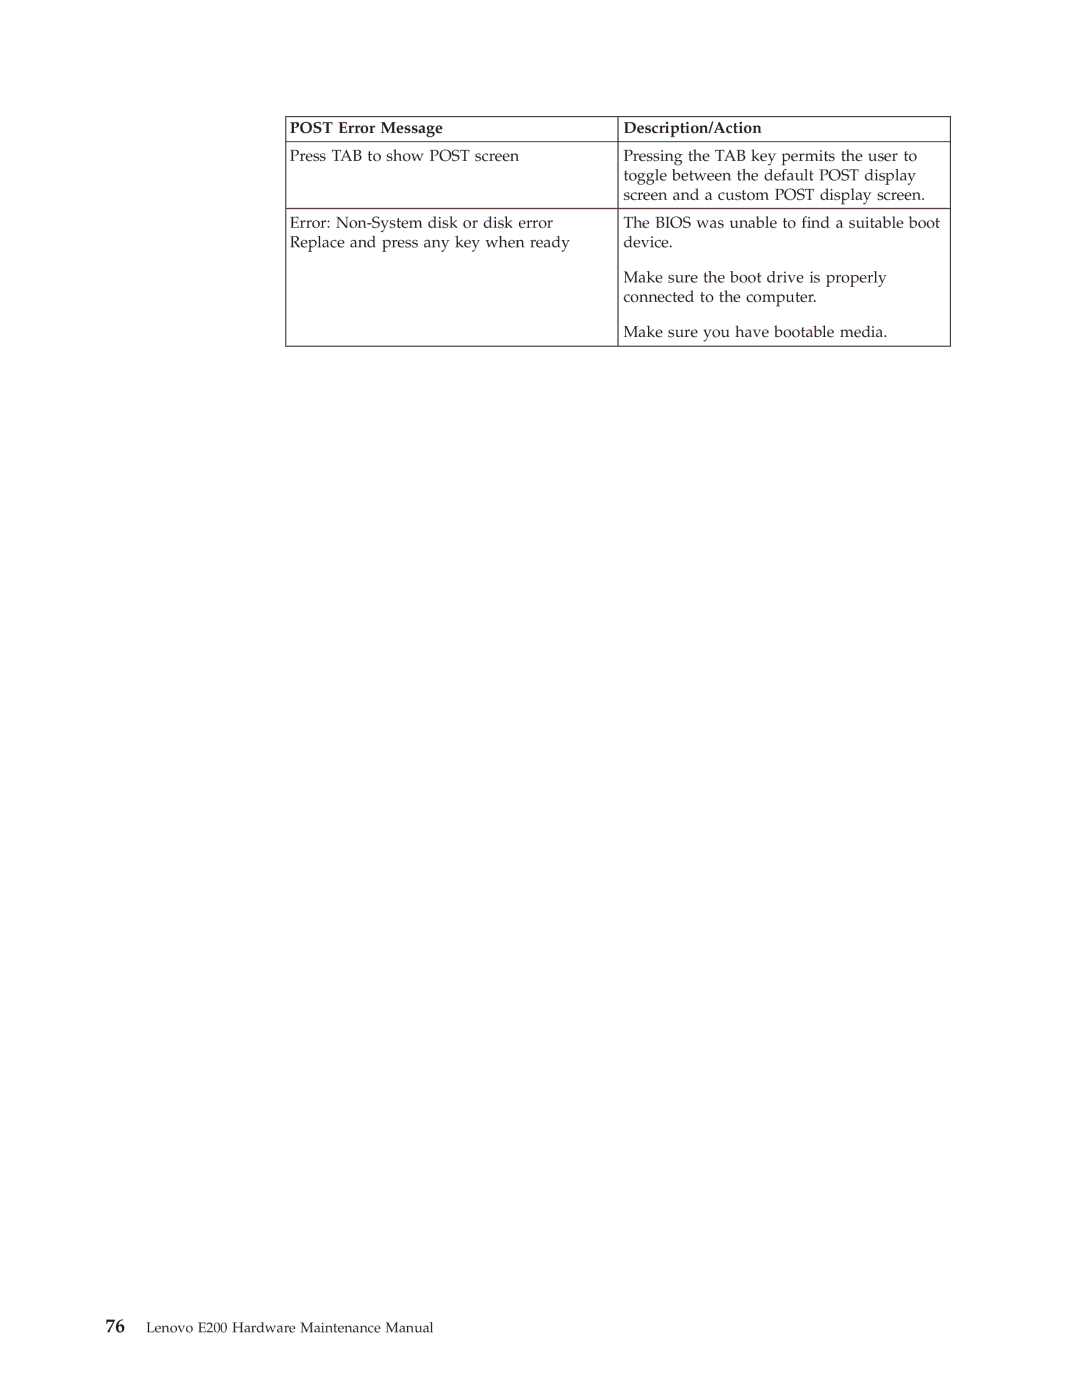 Lenovo E200 manual Post Error Message Description/Action 